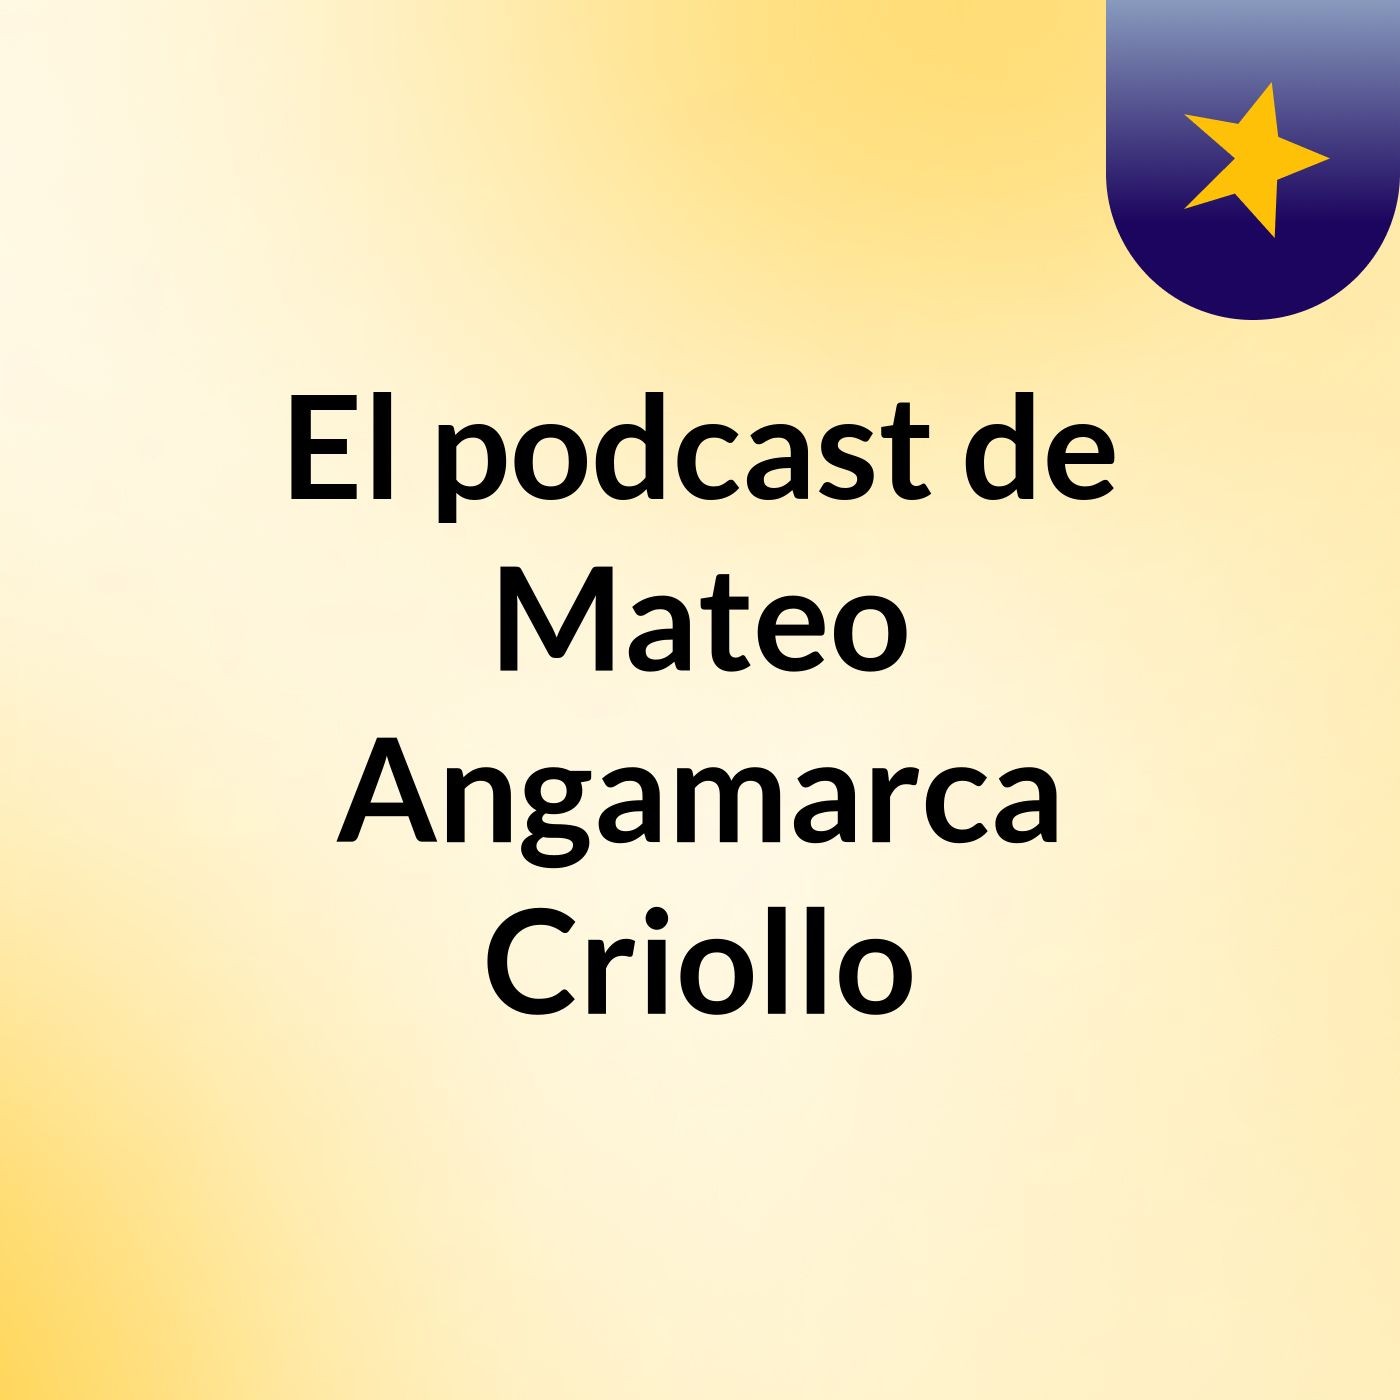 Episodio 2 - El podcast de Mateo Angamarca Criollo